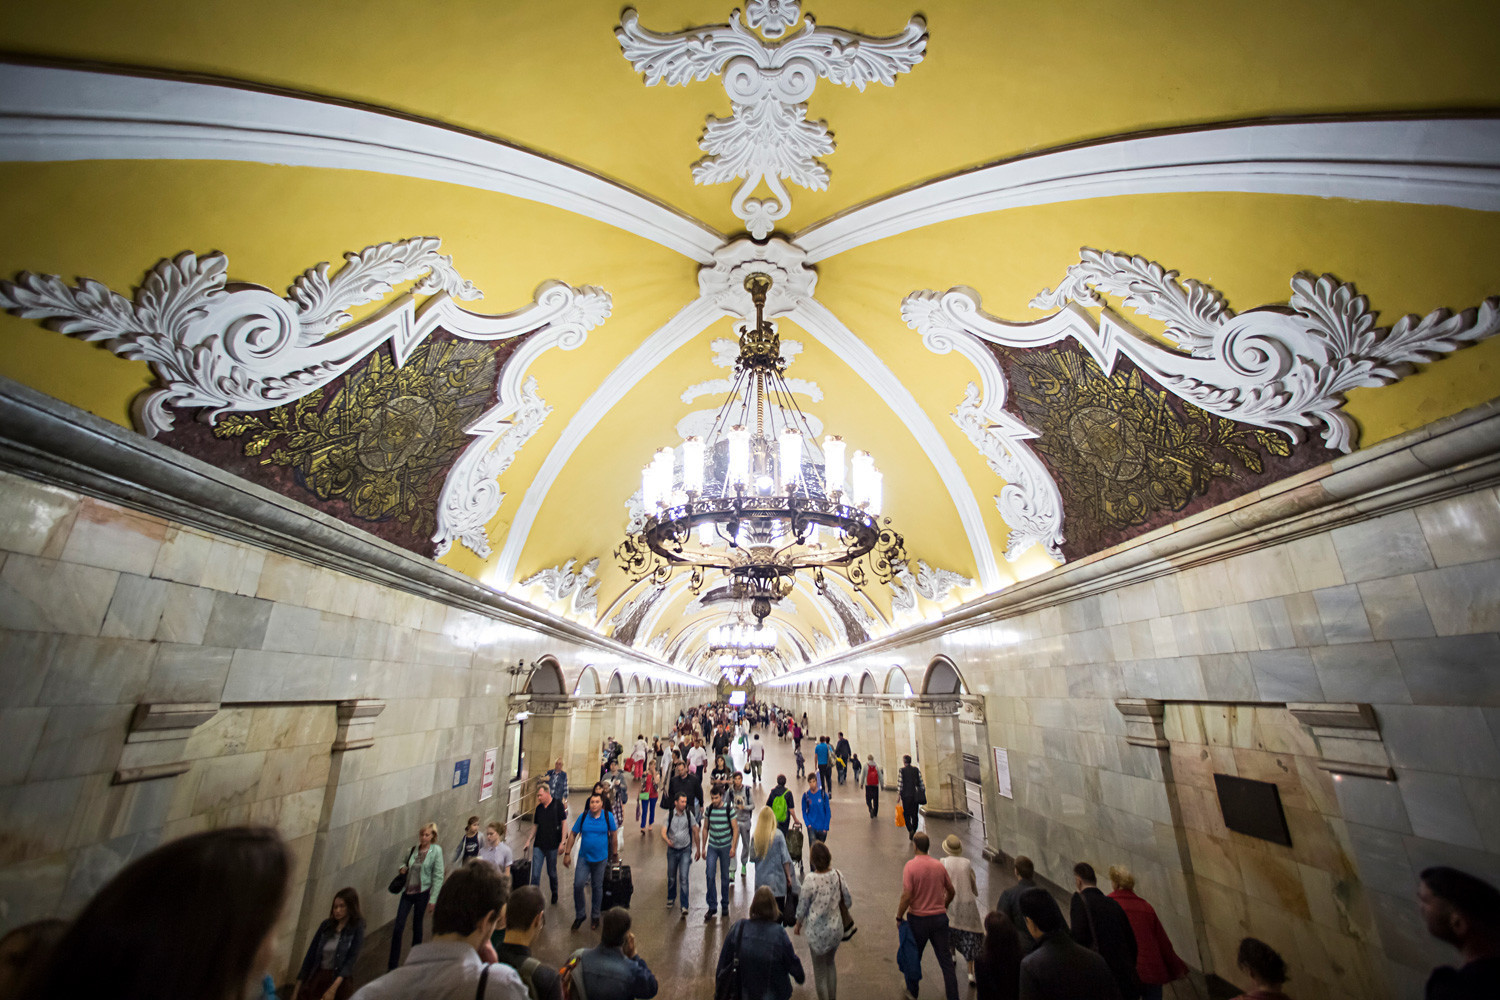 Stasiun metro Komsomolskaya.